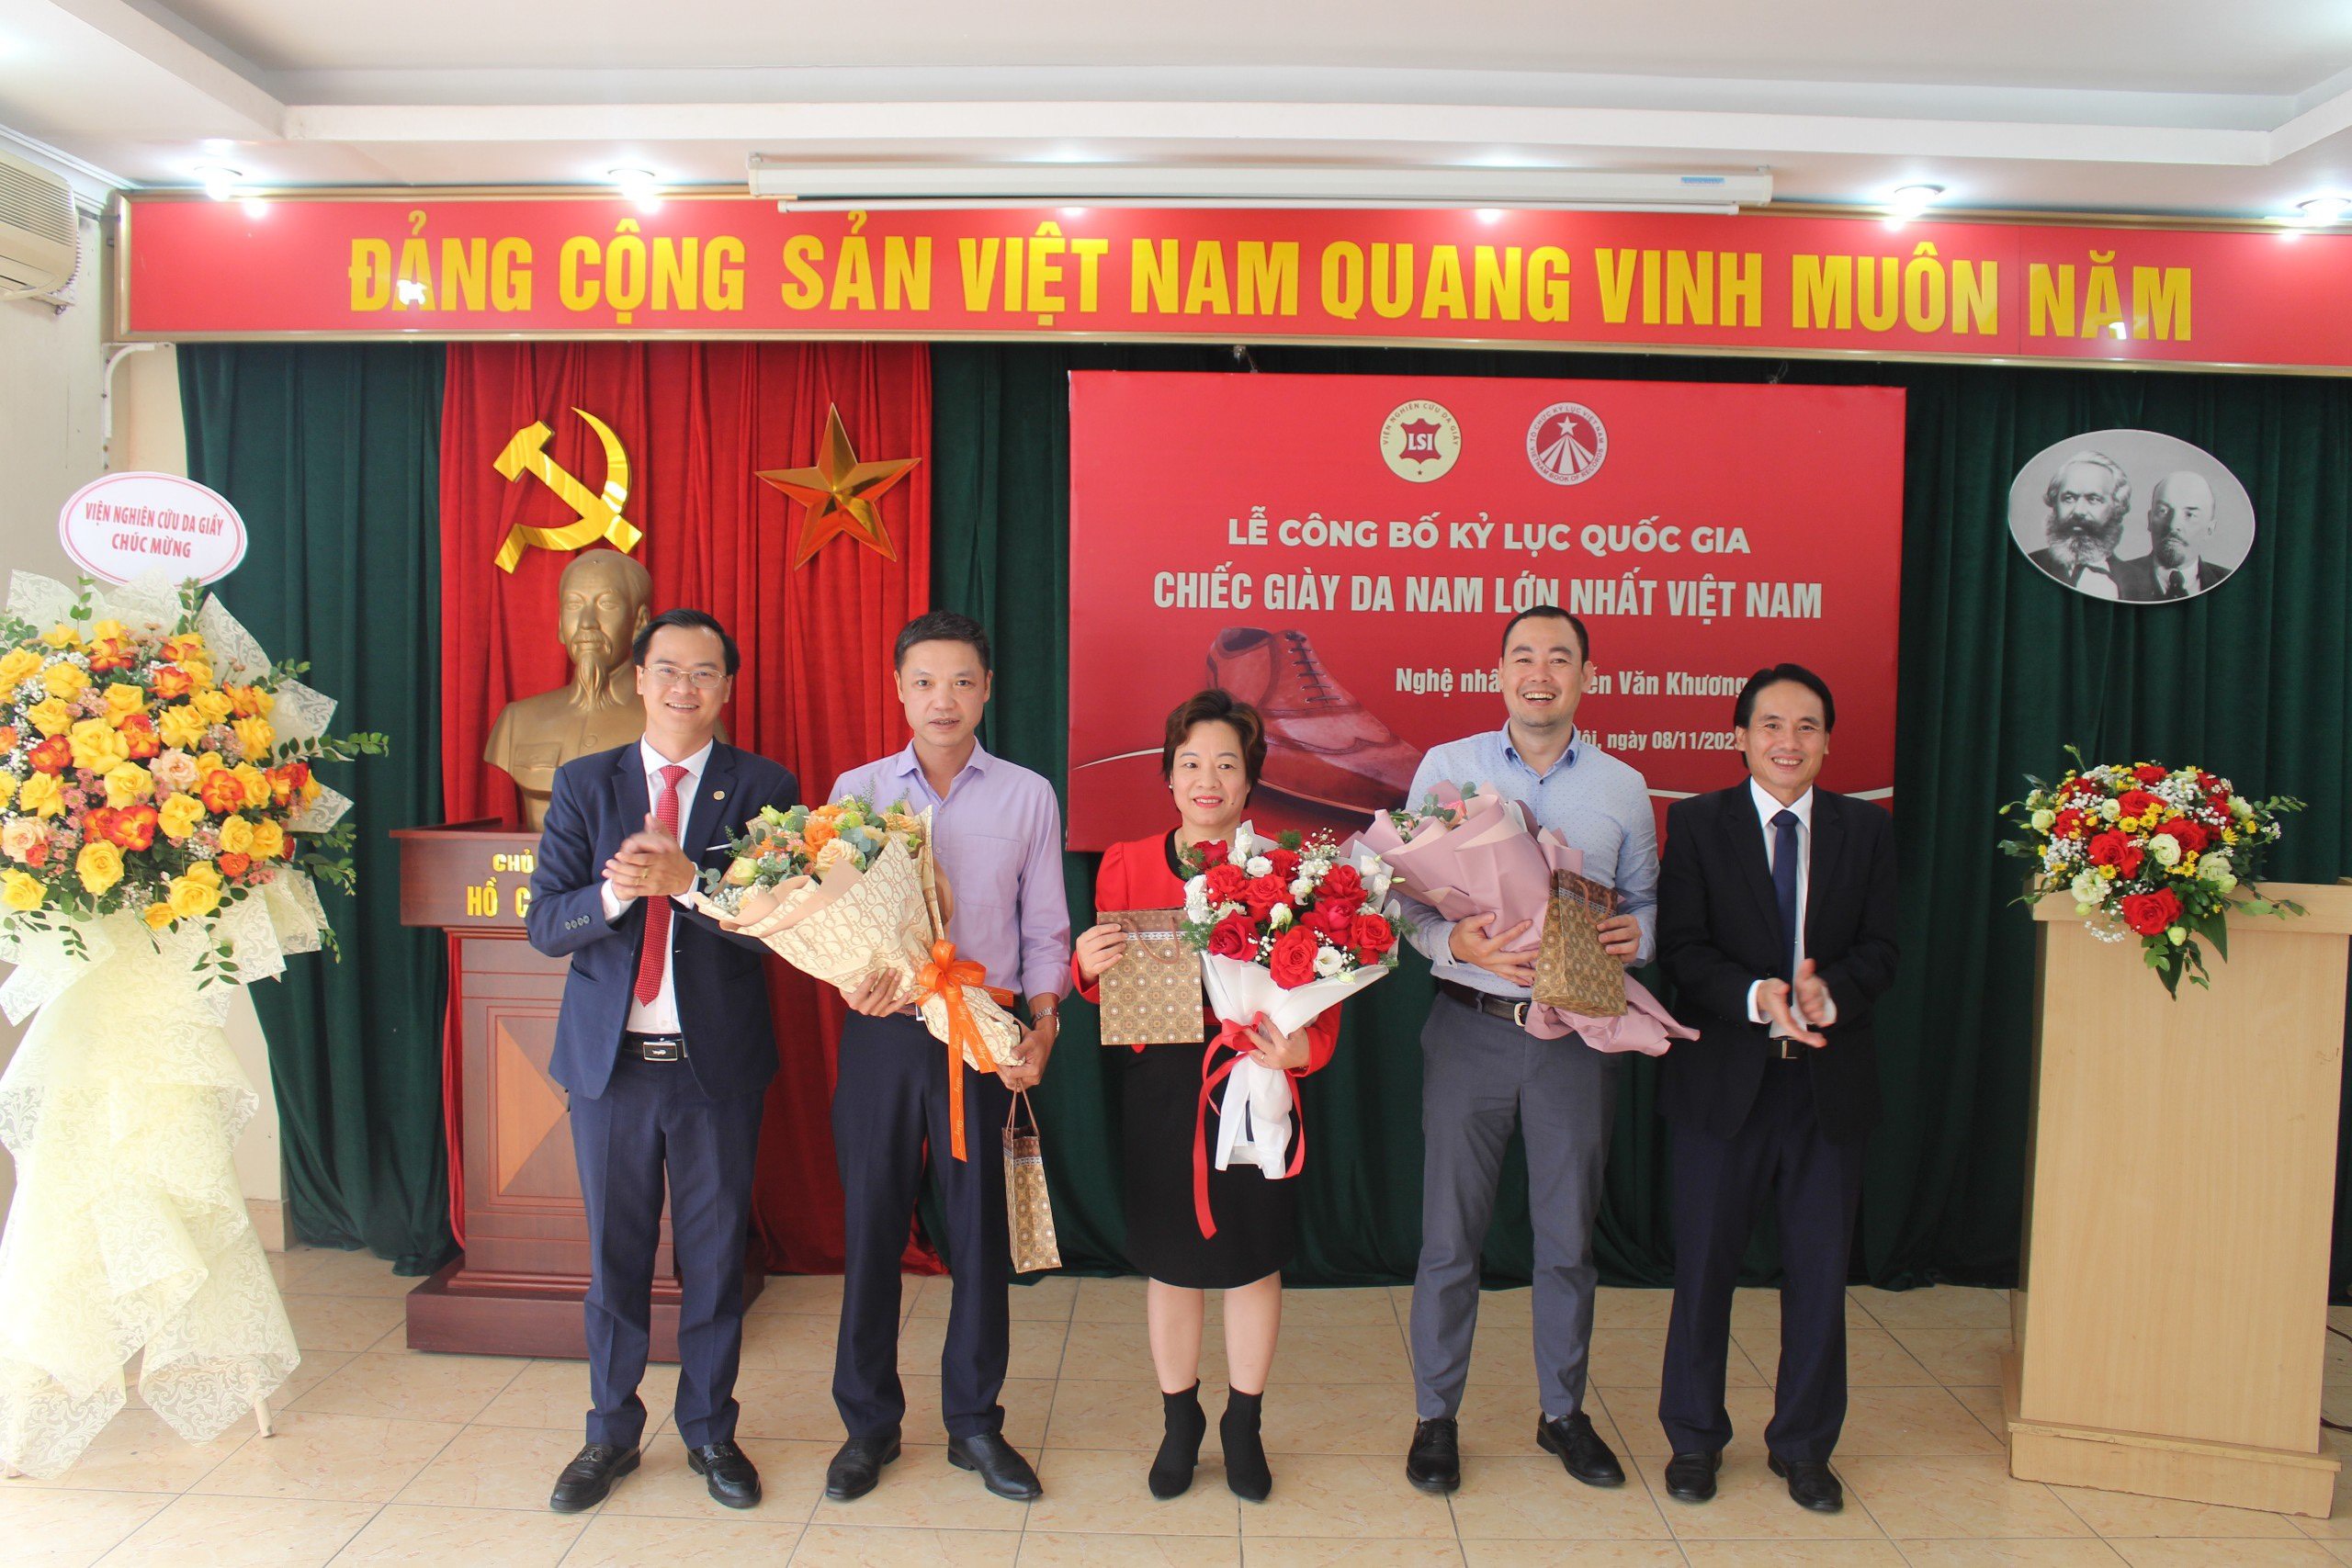 Đại diện Kỷ lục Việt Nam và Viện Nghiên cứu Da Giày tặng hoa chúc mừng và cảm ơn các nghệ nhân đã tham gia đóng góp, hoàn thành tác phẩm - Ảnh: VietKings 